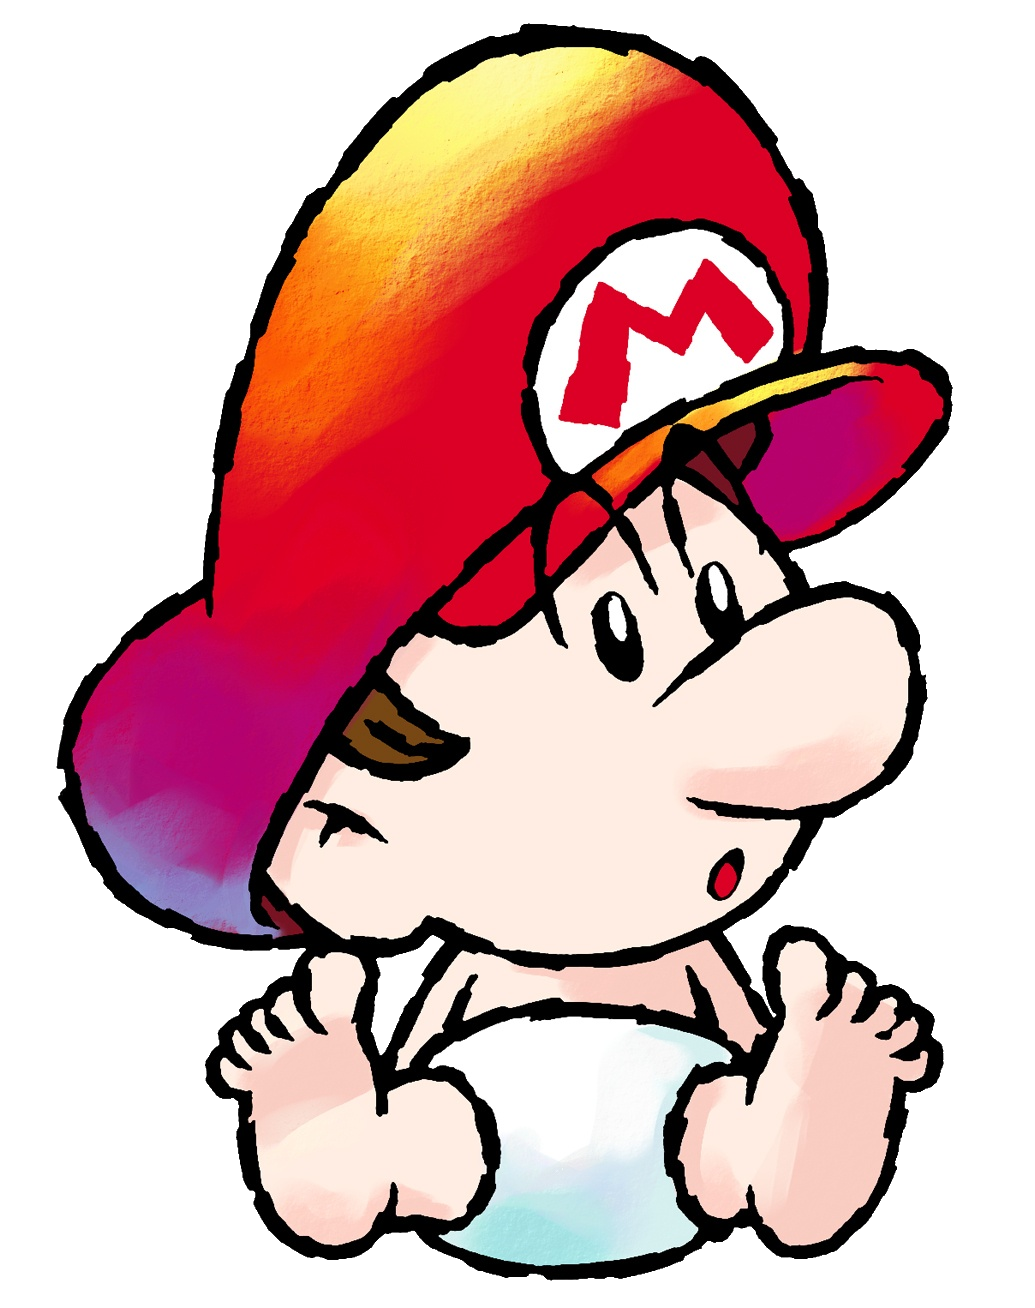 Baby_Mario_Artwork_1_-_Super_Mario_World_2.png